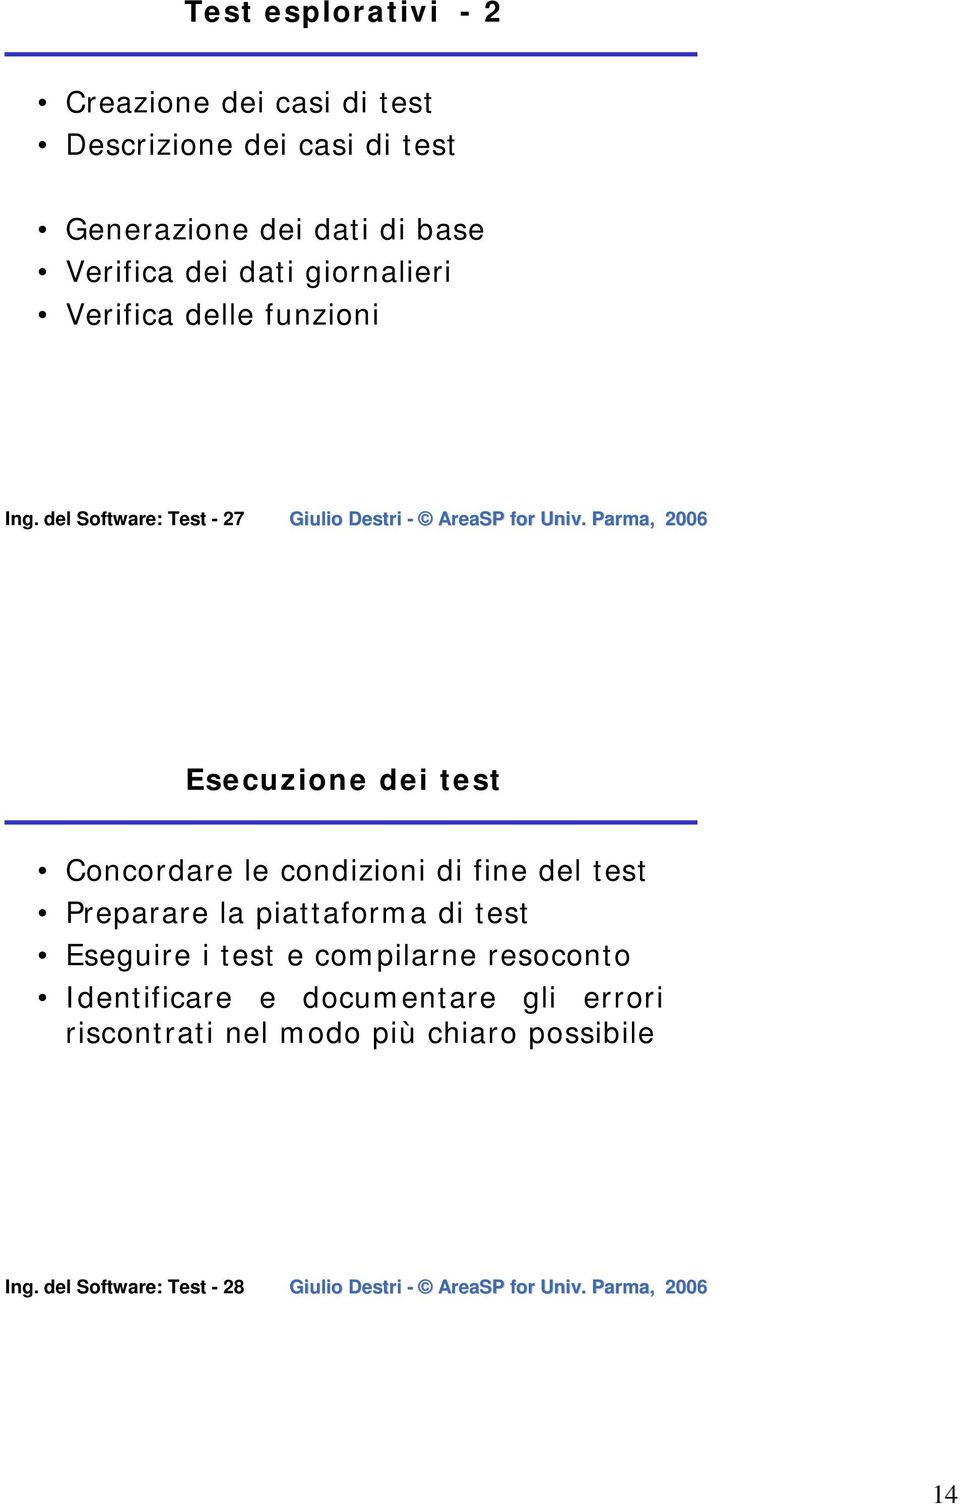 del Software: Test - 27 Esecuzione dei test Concordare le condizioni di fine del test Preparare la